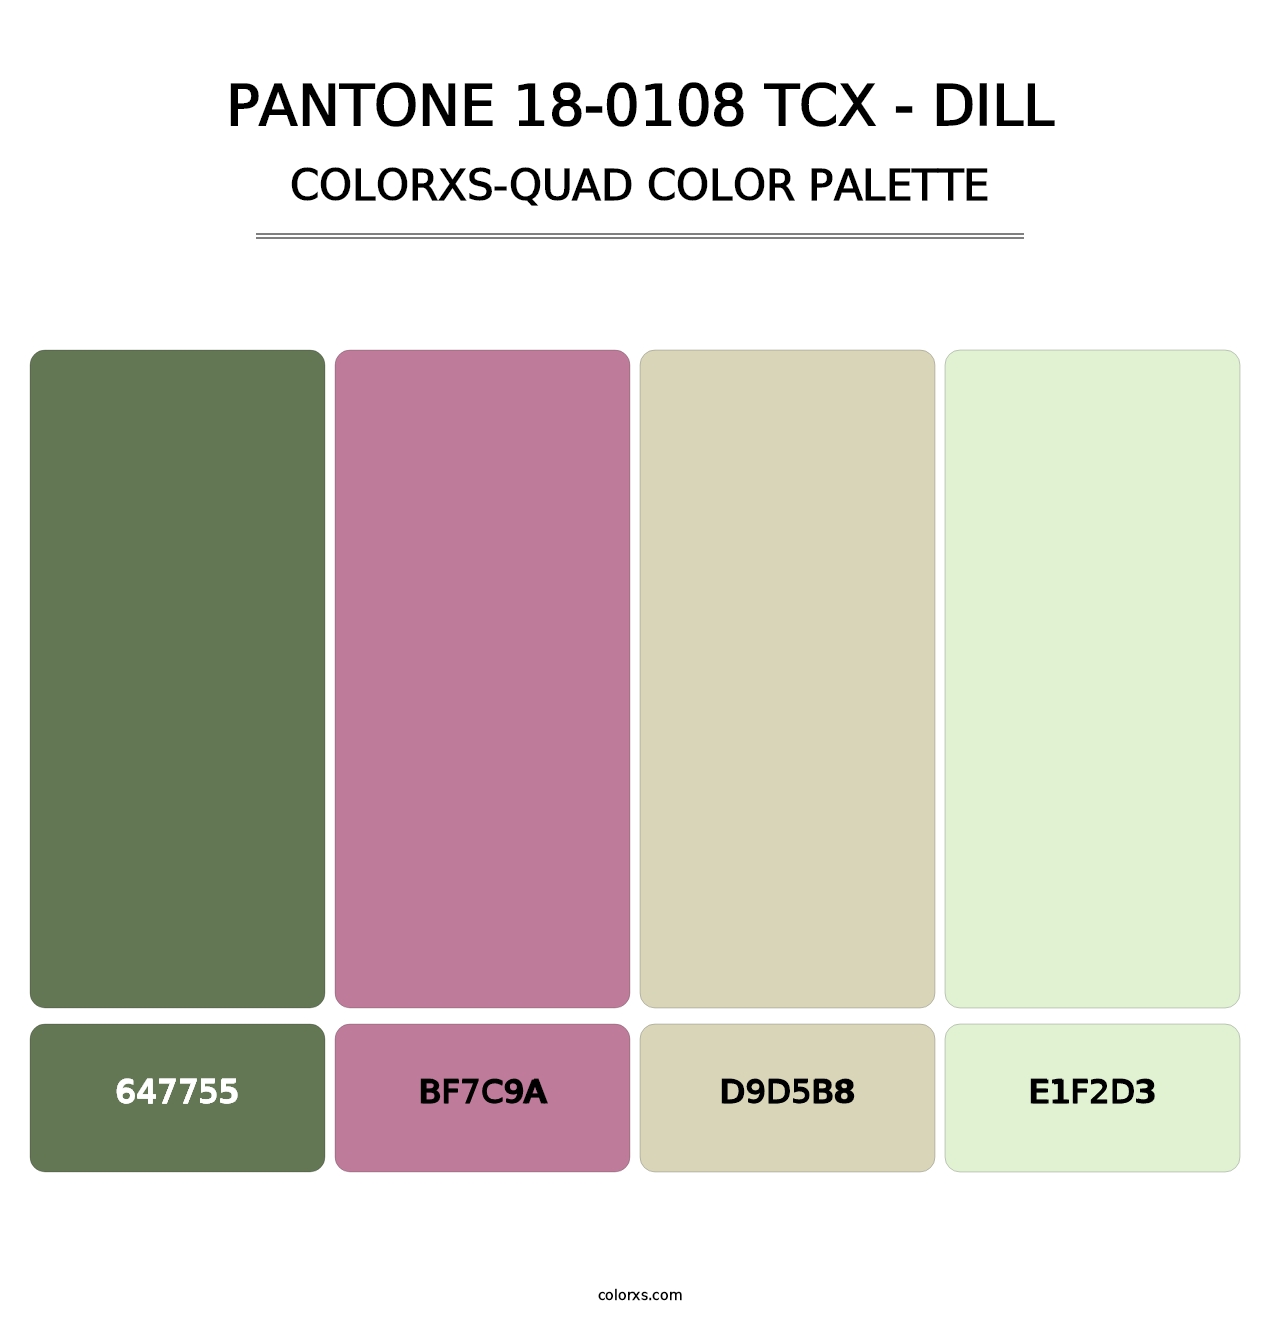 PANTONE 18-0108 TCX - Dill - Colorxs Quad Palette